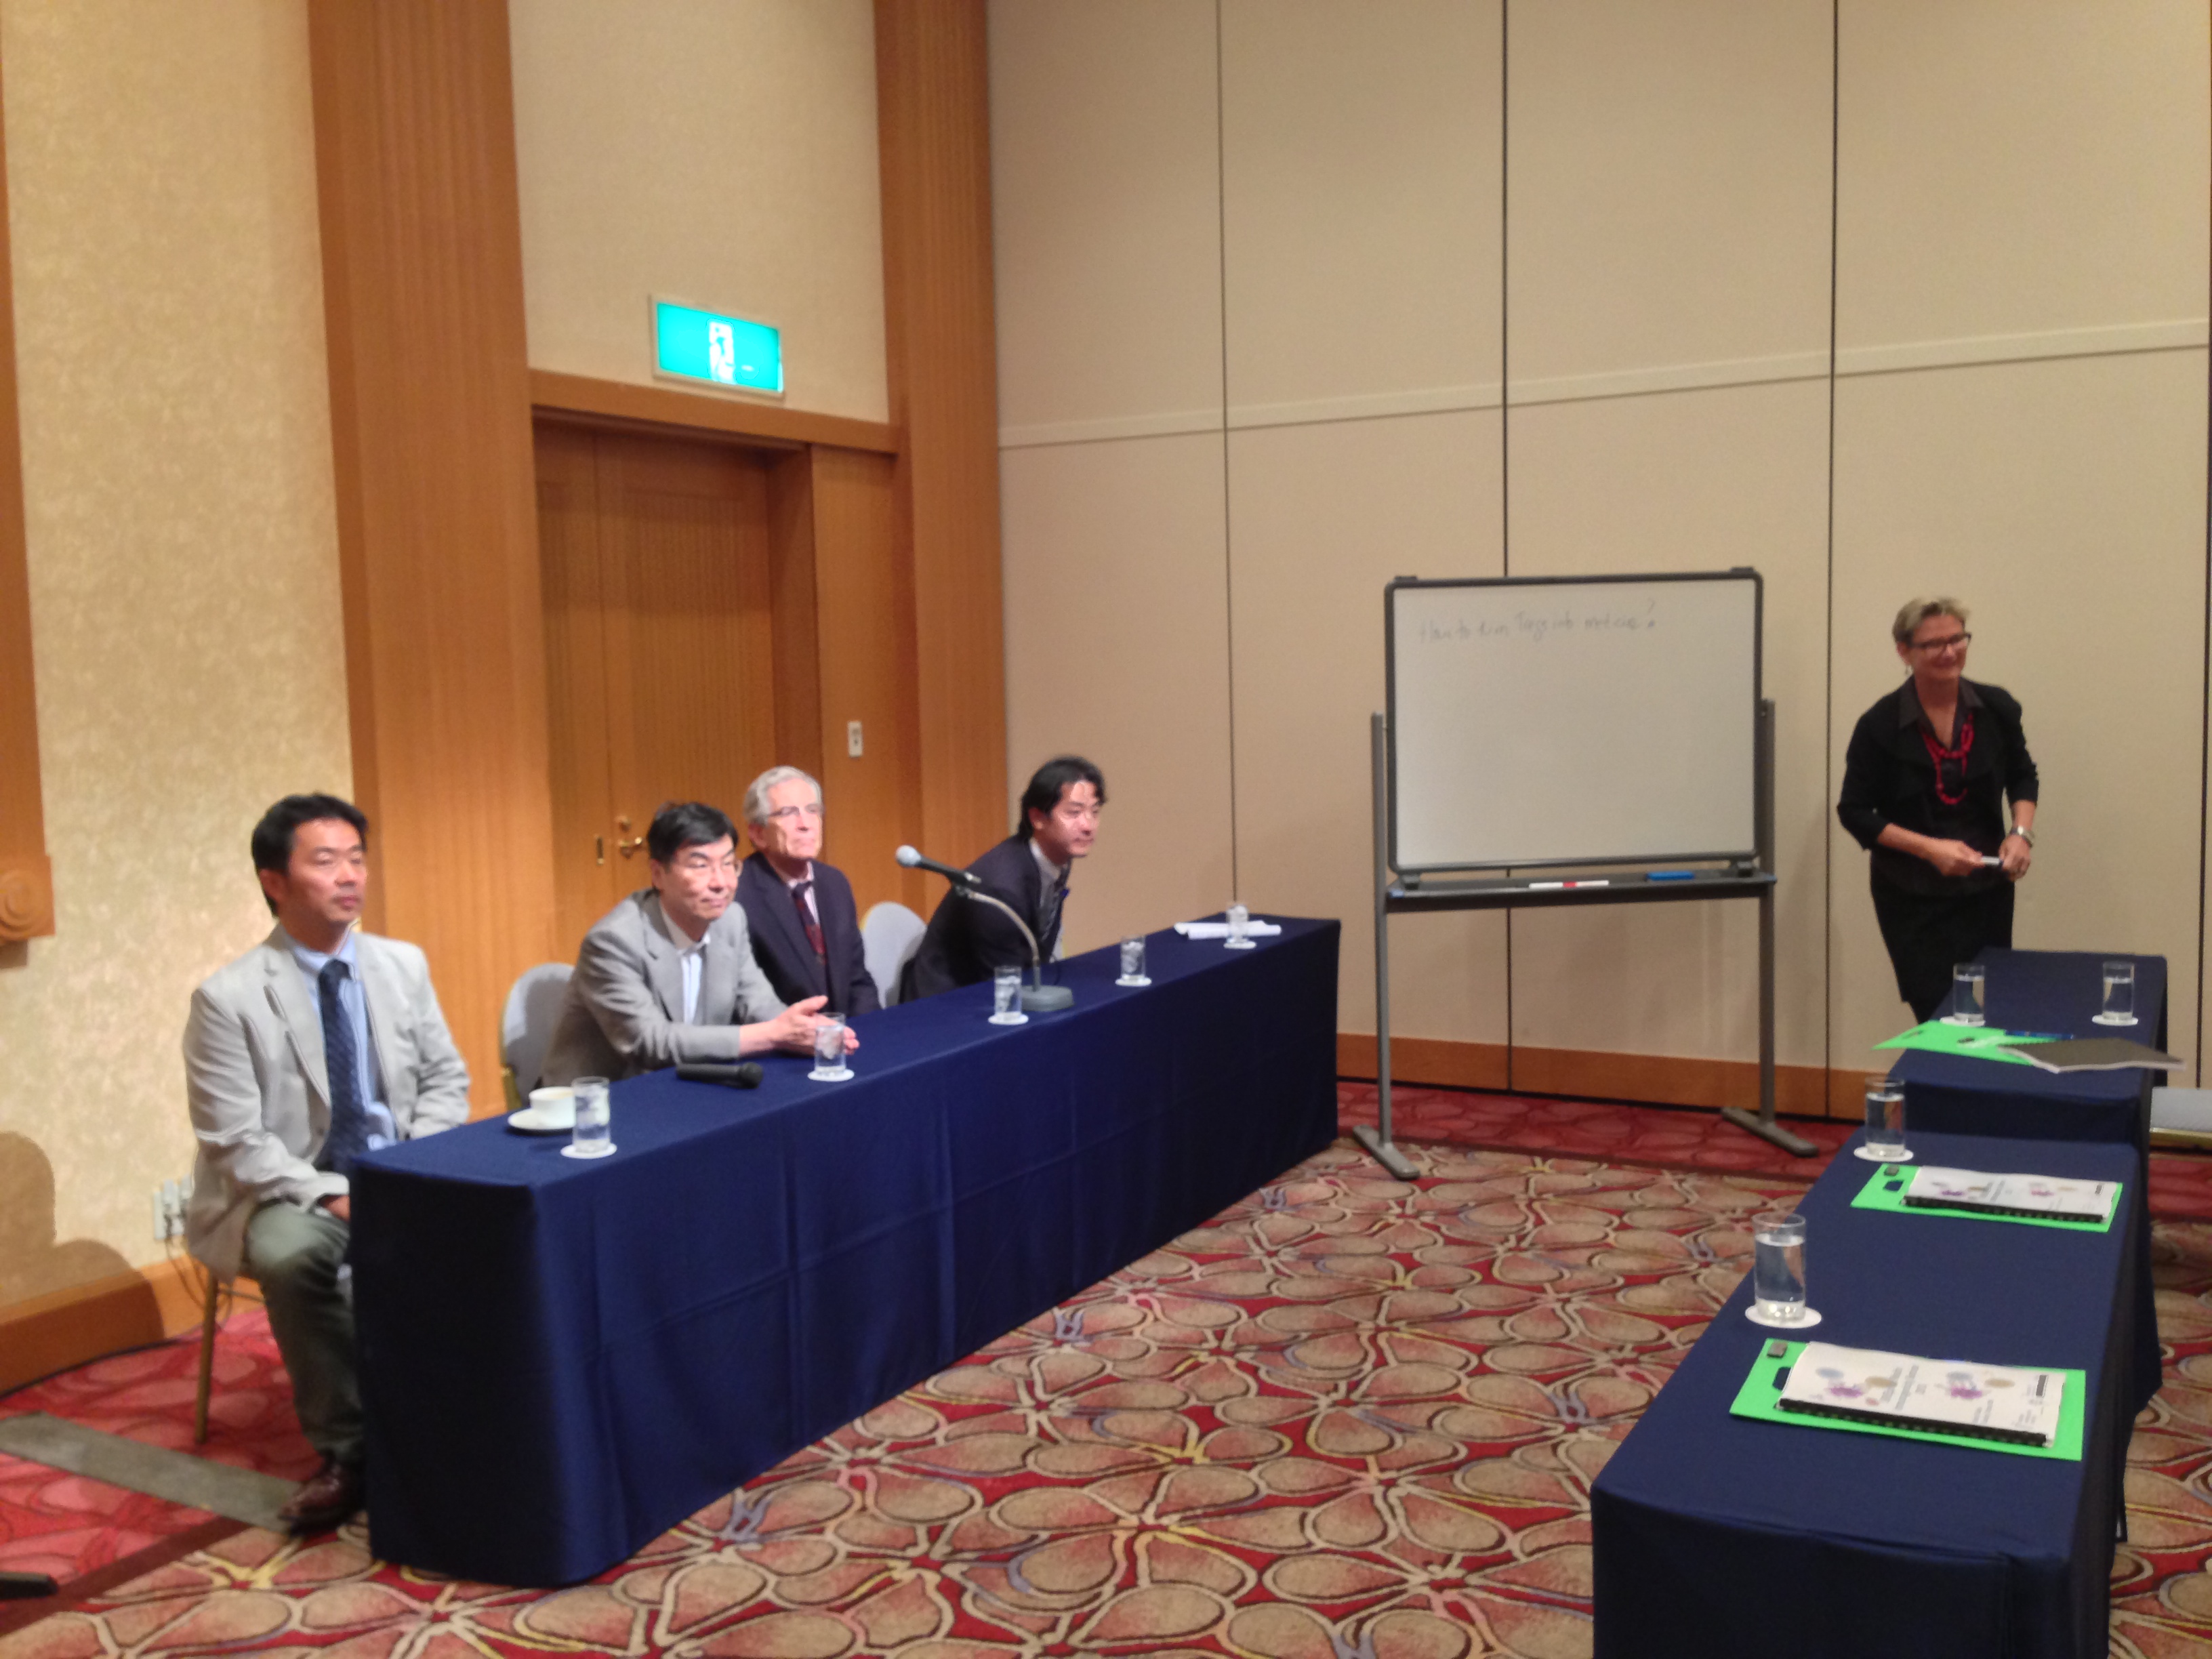 Panel Discussion: Prof. Shimon Sakaguchi, Dr. Naonobu Sugiyama, Prof. Ken Ishii, Prof. David W. Scott, Prof. Annie De Groot